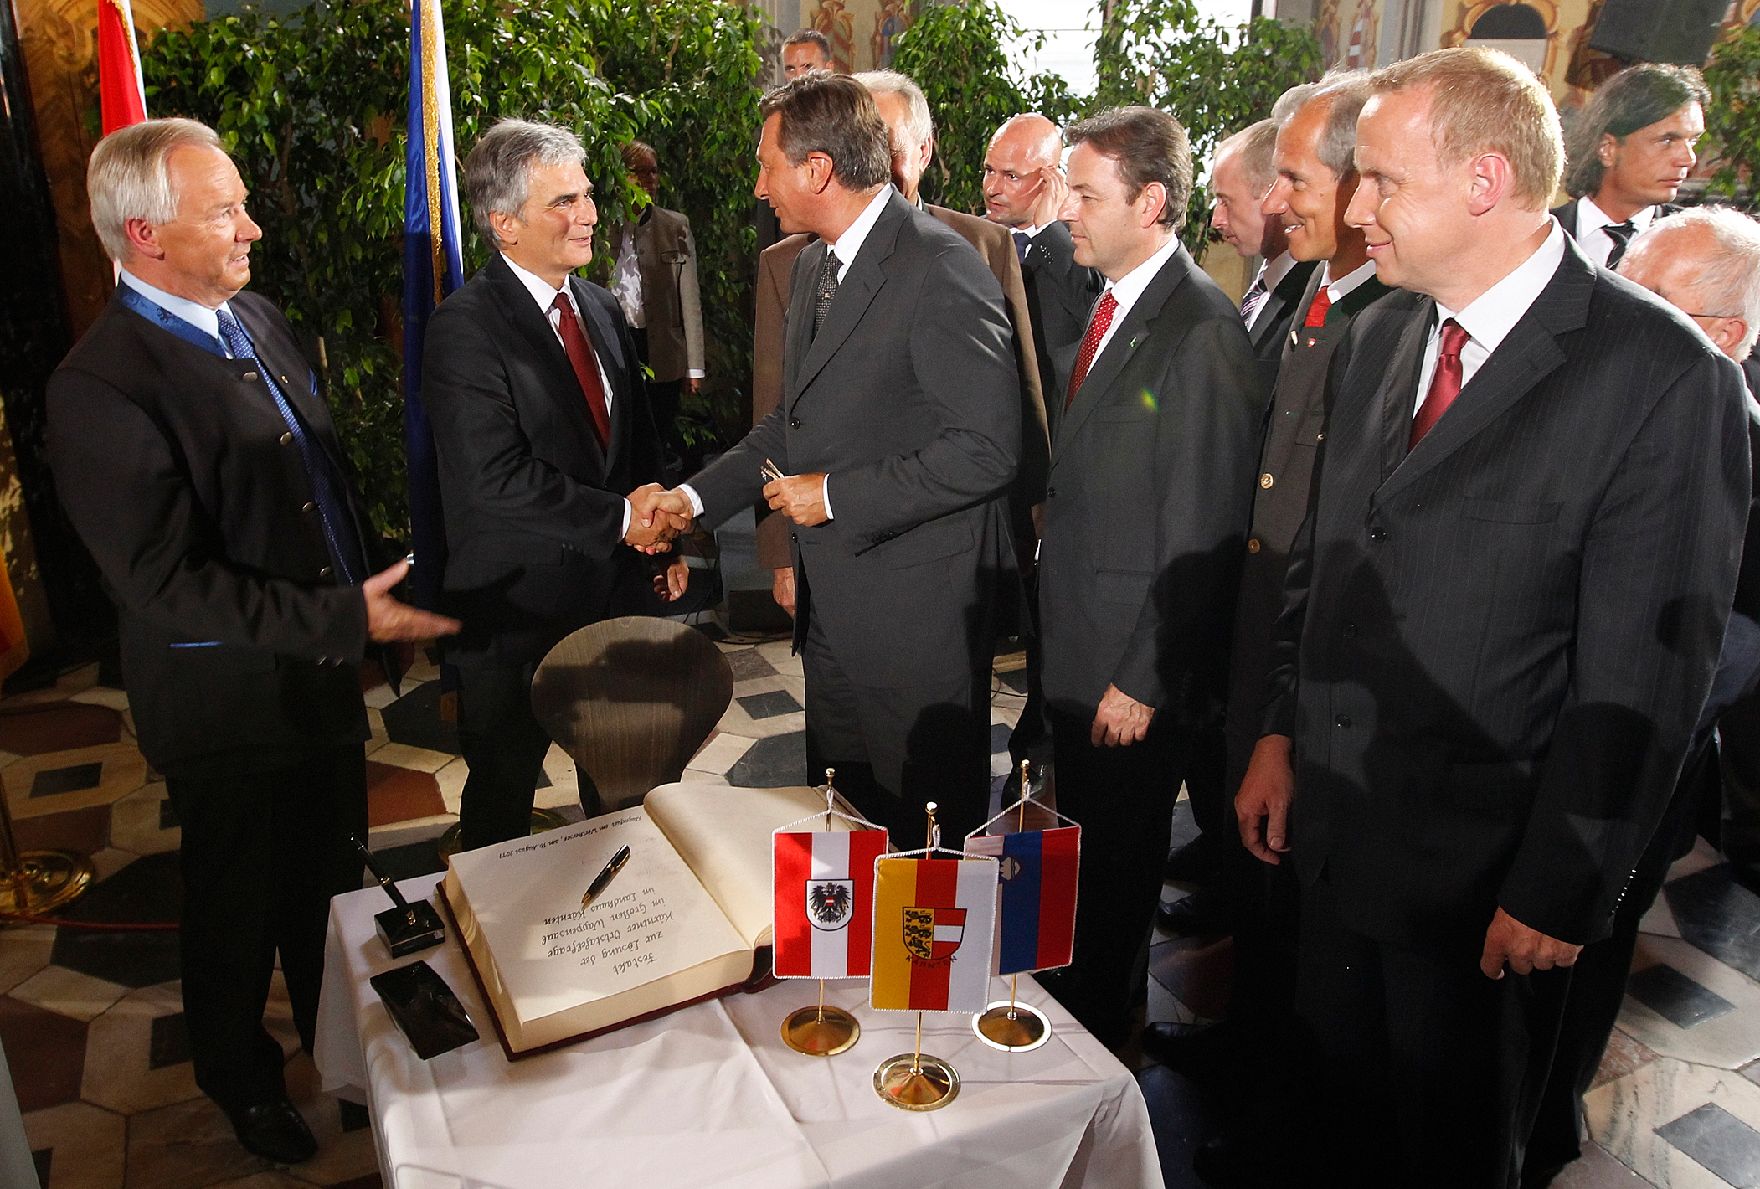 Am 16. August 2011 nahm Bundeskanzler Werner Faymann gemeinsam mit Staatssekretär Josef Ostermayer an der Festveranstaltung anlässlich der Lösung der Kärntner Ortstafelfrage in Klagenfurt teil.